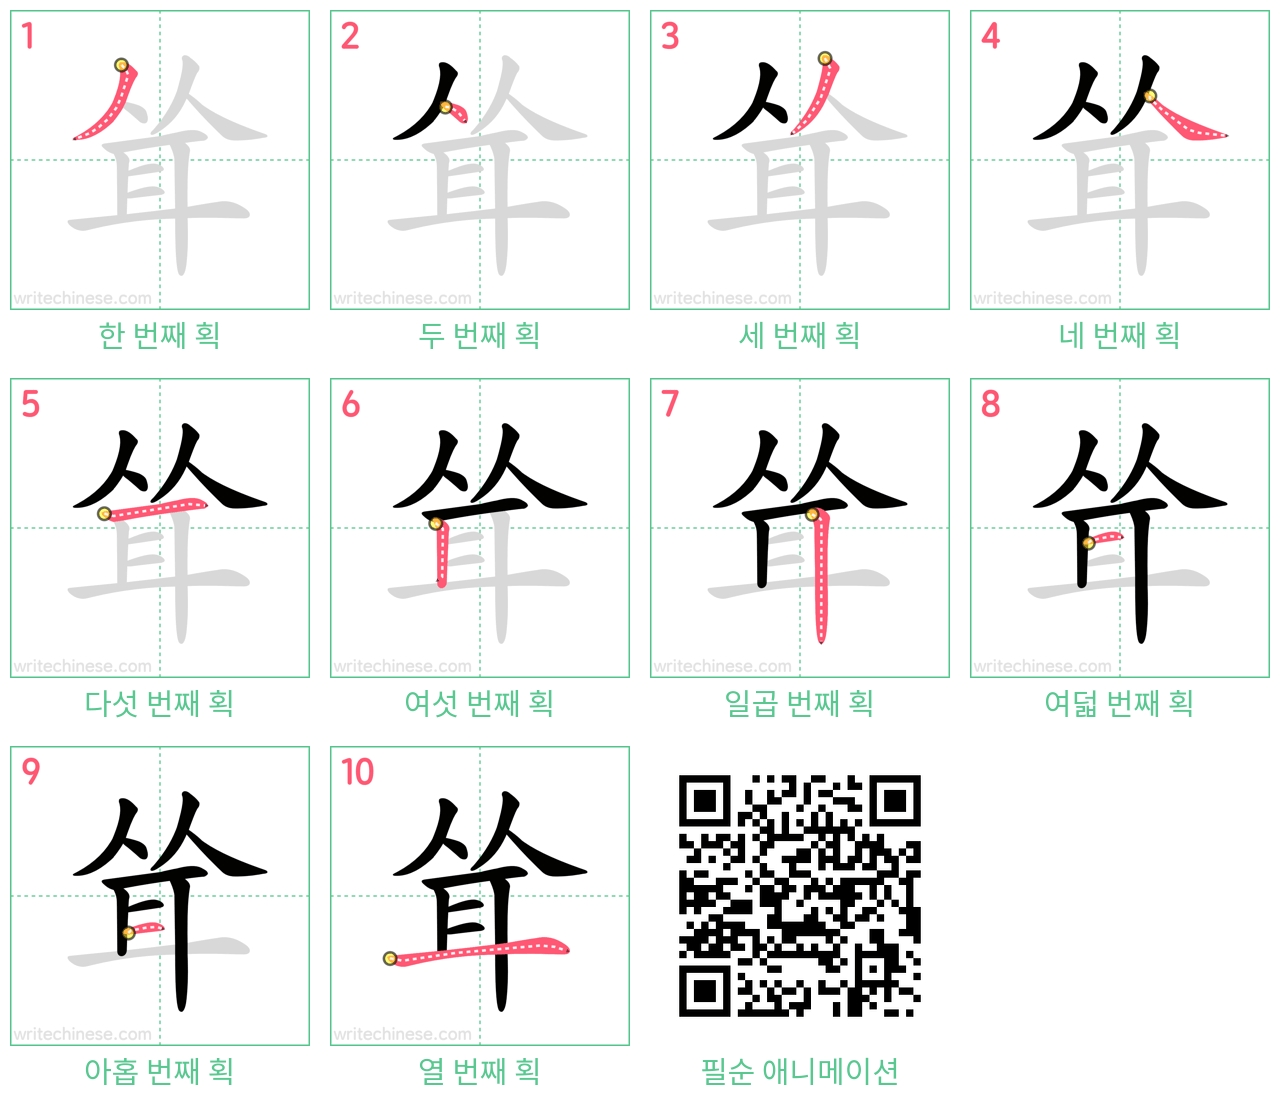 耸 step-by-step stroke order diagrams